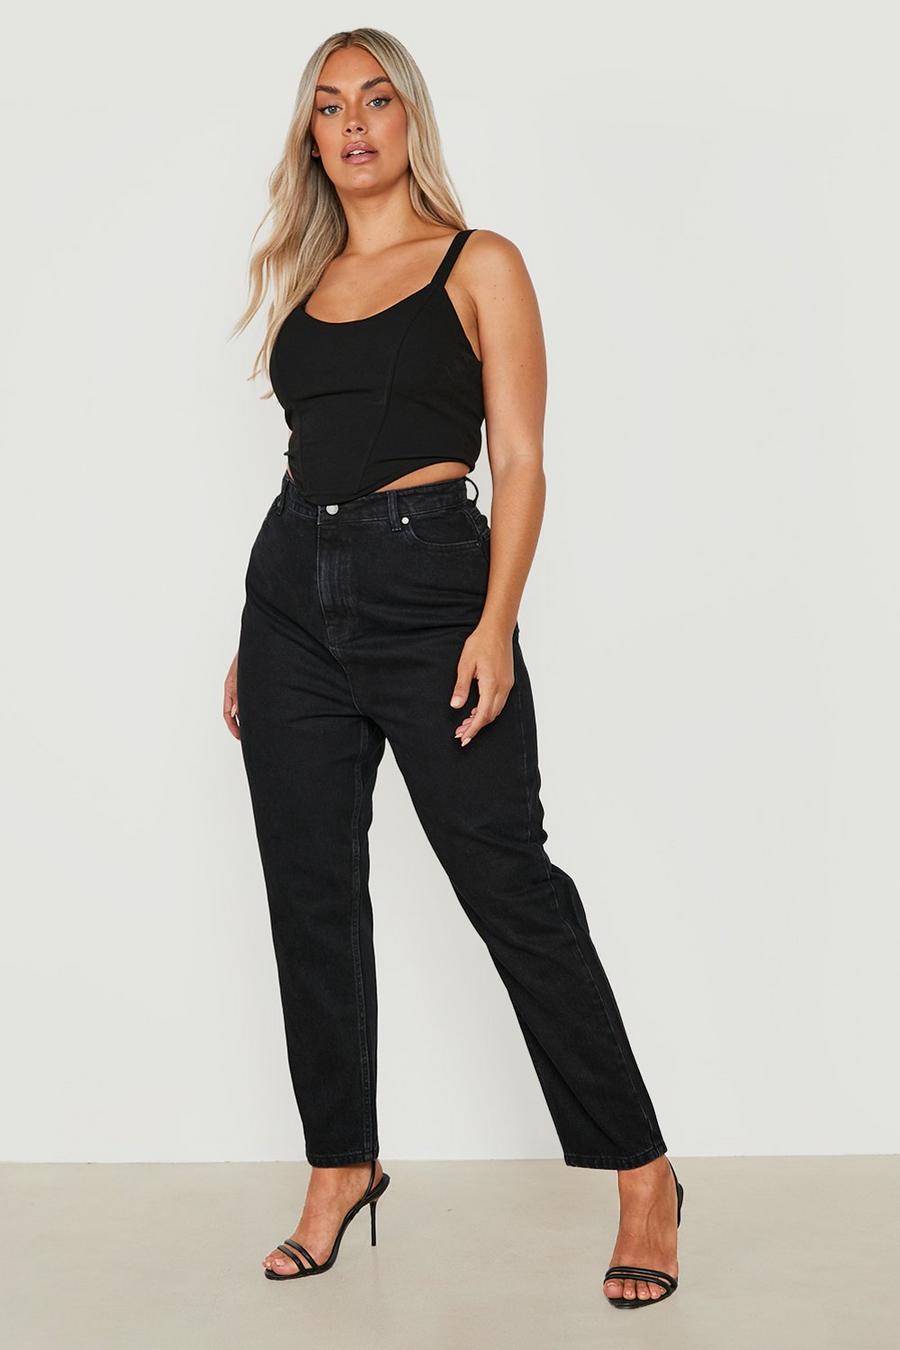 שחור nero ג'ינס בגזרה ישרה עם מחטב ישבן, מידות גדולות 